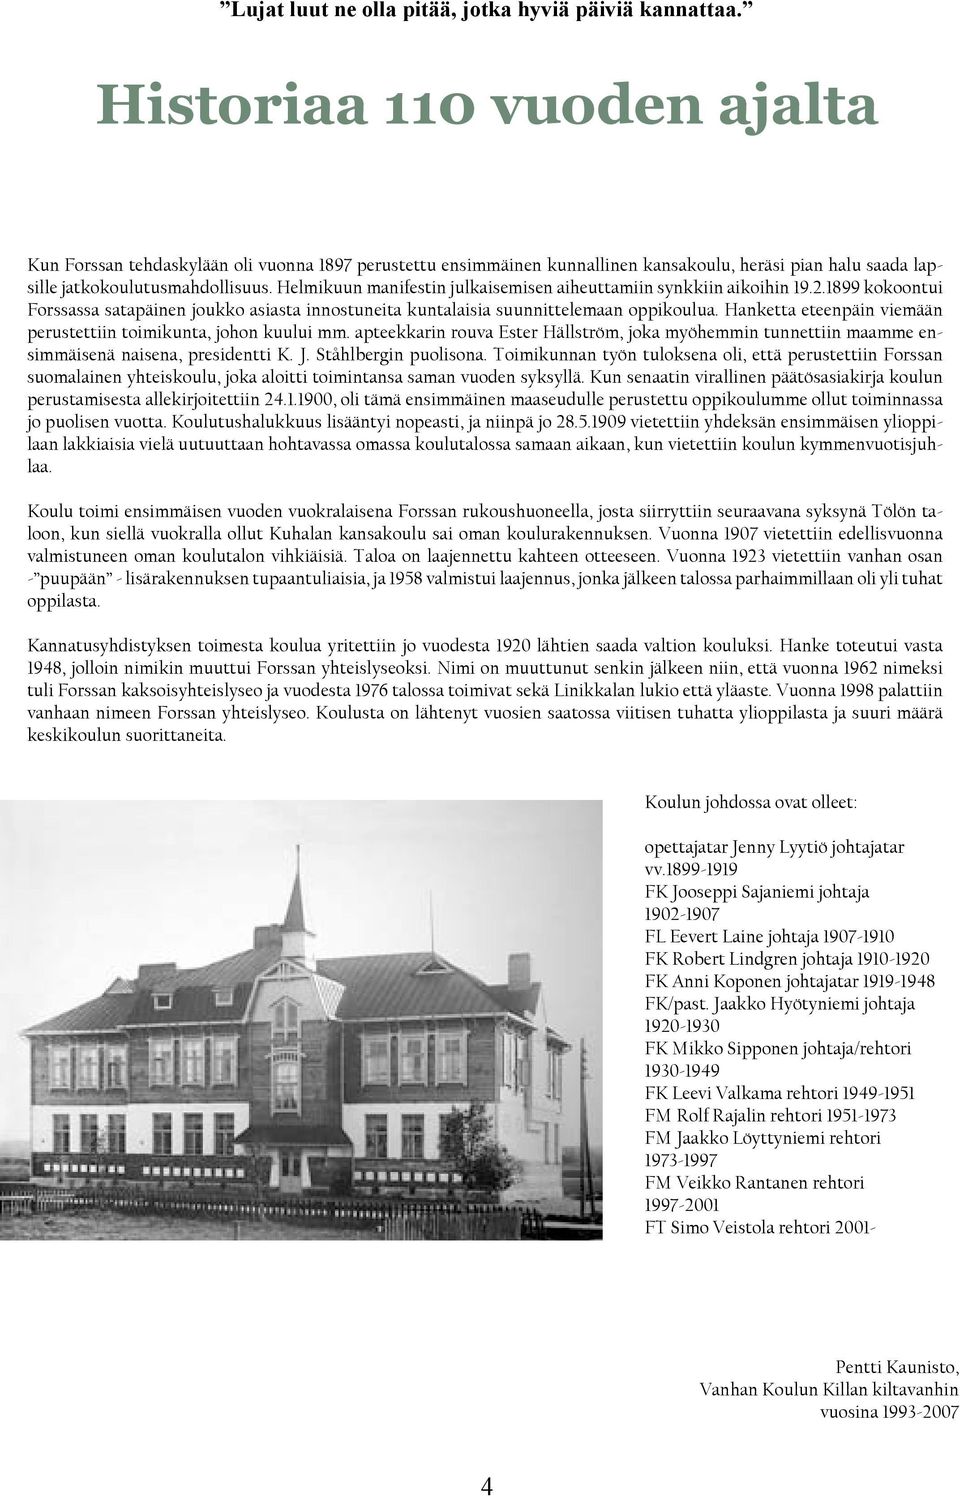 Helmikuun manifestin julkaisemisen aiheuttamiin synkkiin aikoihin 19.2.1899 kokoontui Forssassa satapäinen joukko asiasta innostuneita kuntalaisia suunnittelemaan oppikoulua.